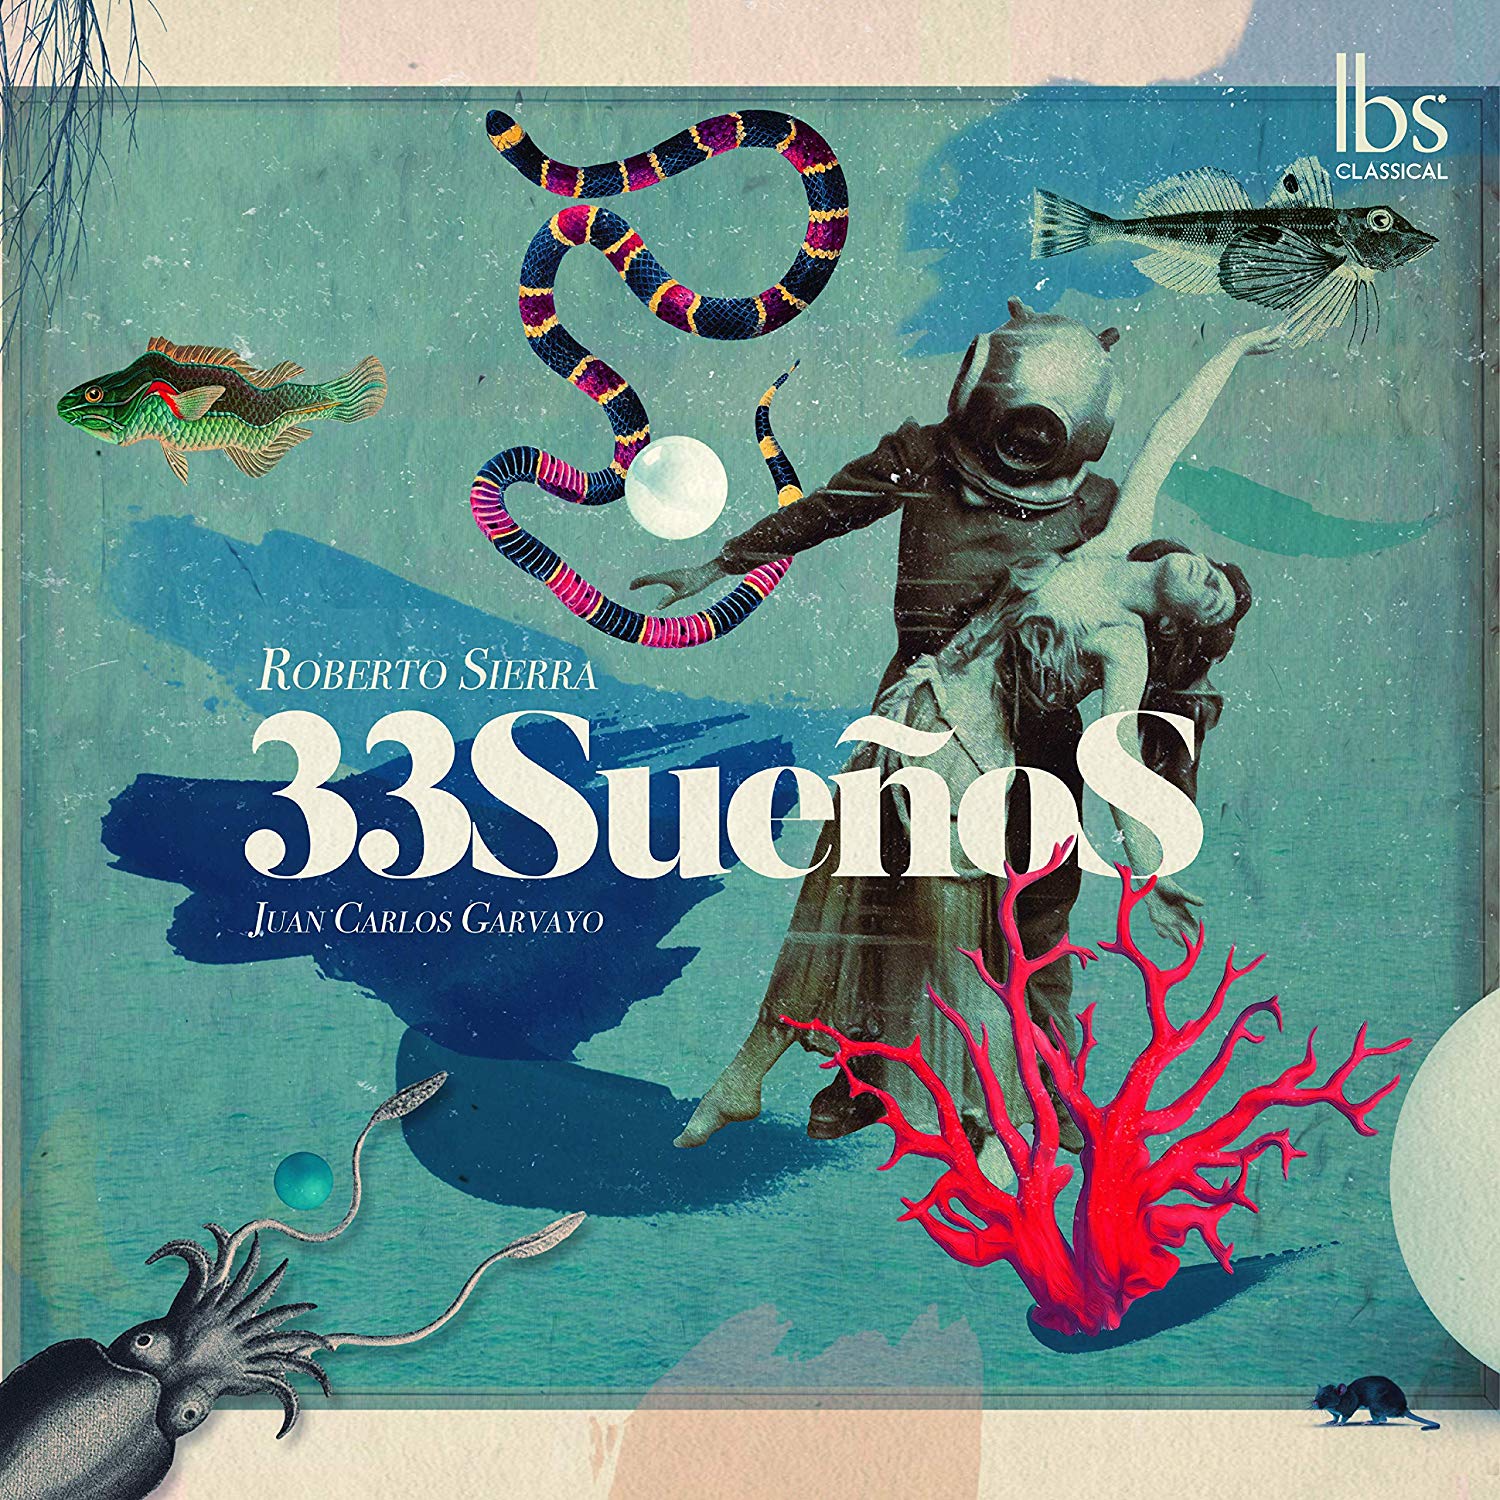 Novedades discogrficas: 33 Sueos  de Roberto Sierra editado en Ibs Classical